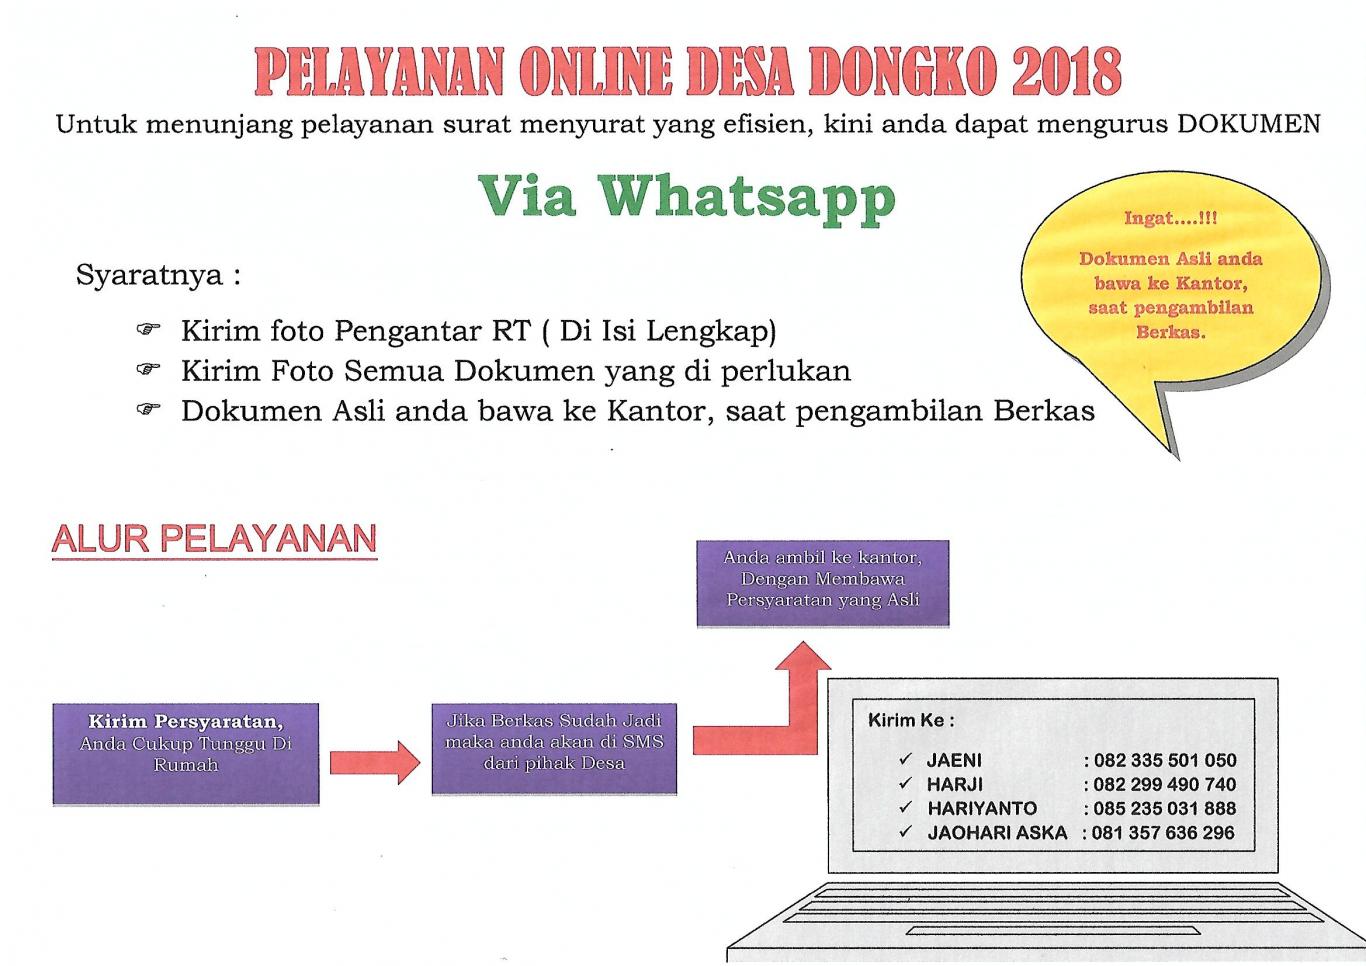 Pelayanan Online Desa Dongko 2018 Website Desa Dongko